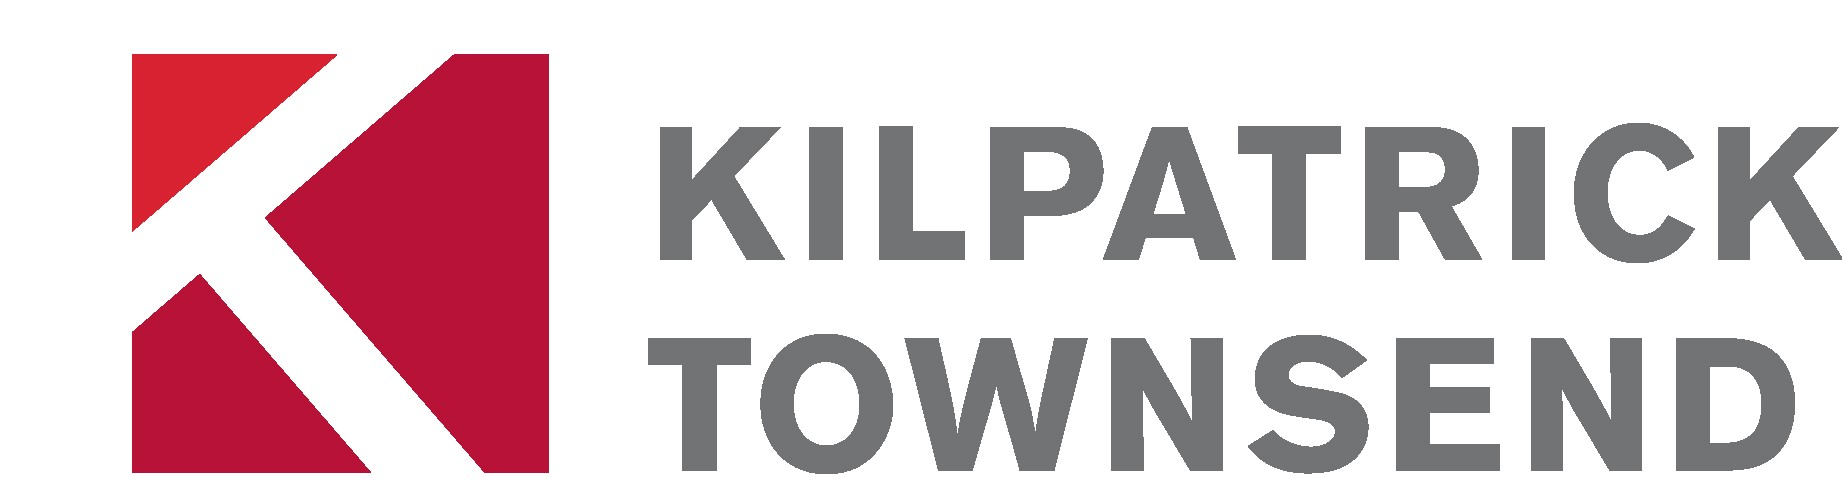 Kilpatrick Townsend & Stockton LLP 